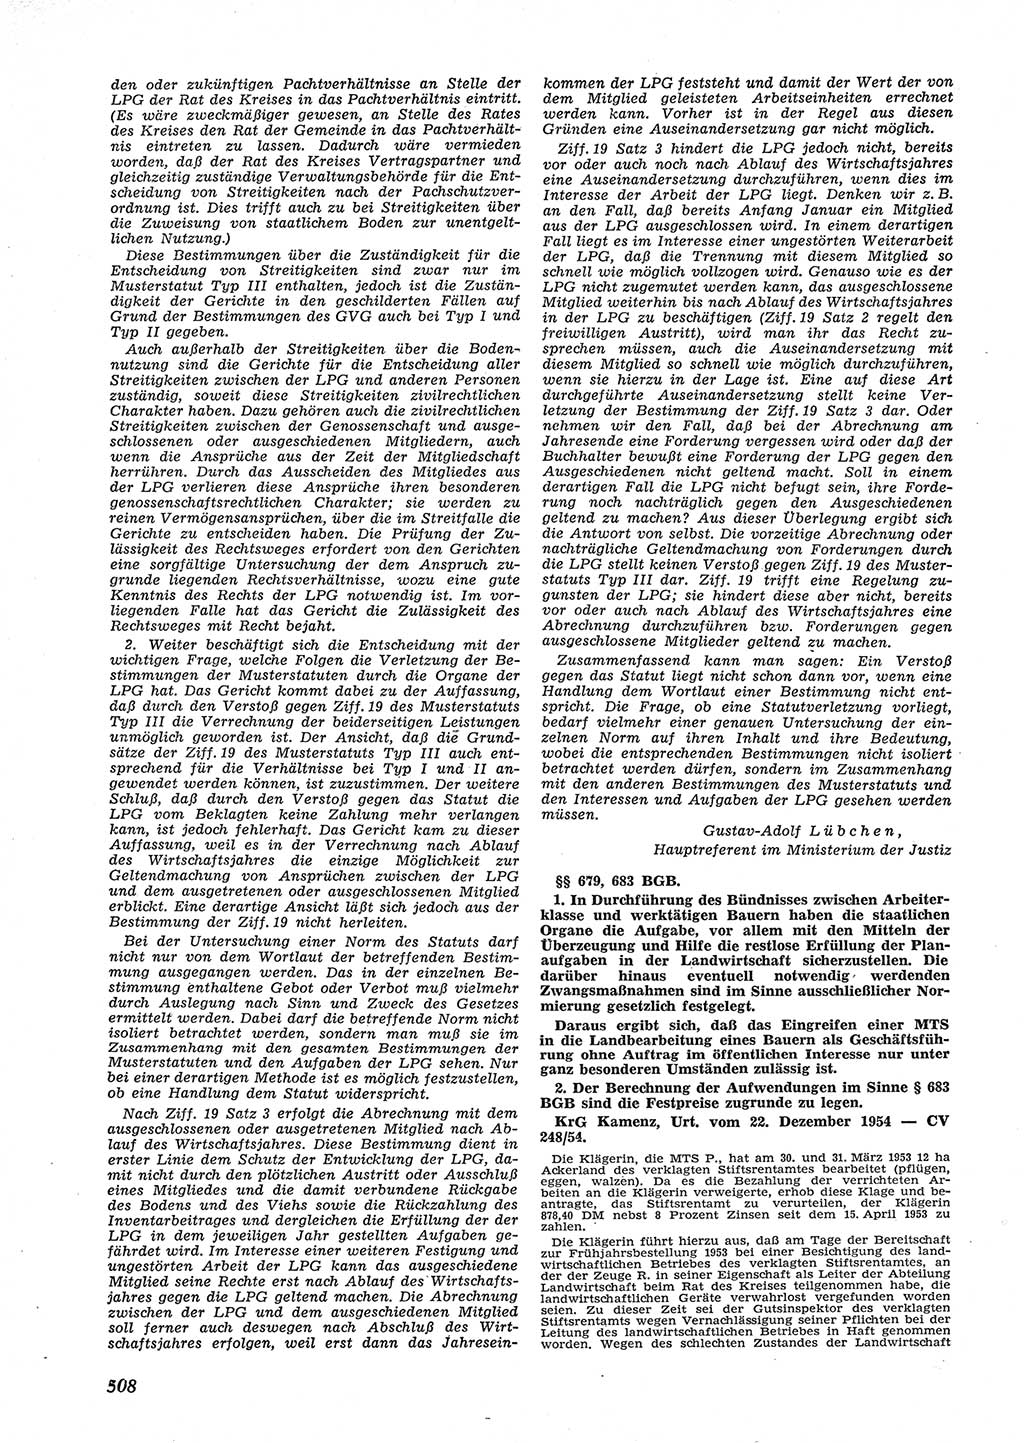 Neue Justiz (NJ), Zeitschrift für Recht und Rechtswissenschaft [Deutsche Demokratische Republik (DDR)], 9. Jahrgang 1955, Seite 508 (NJ DDR 1955, S. 508)